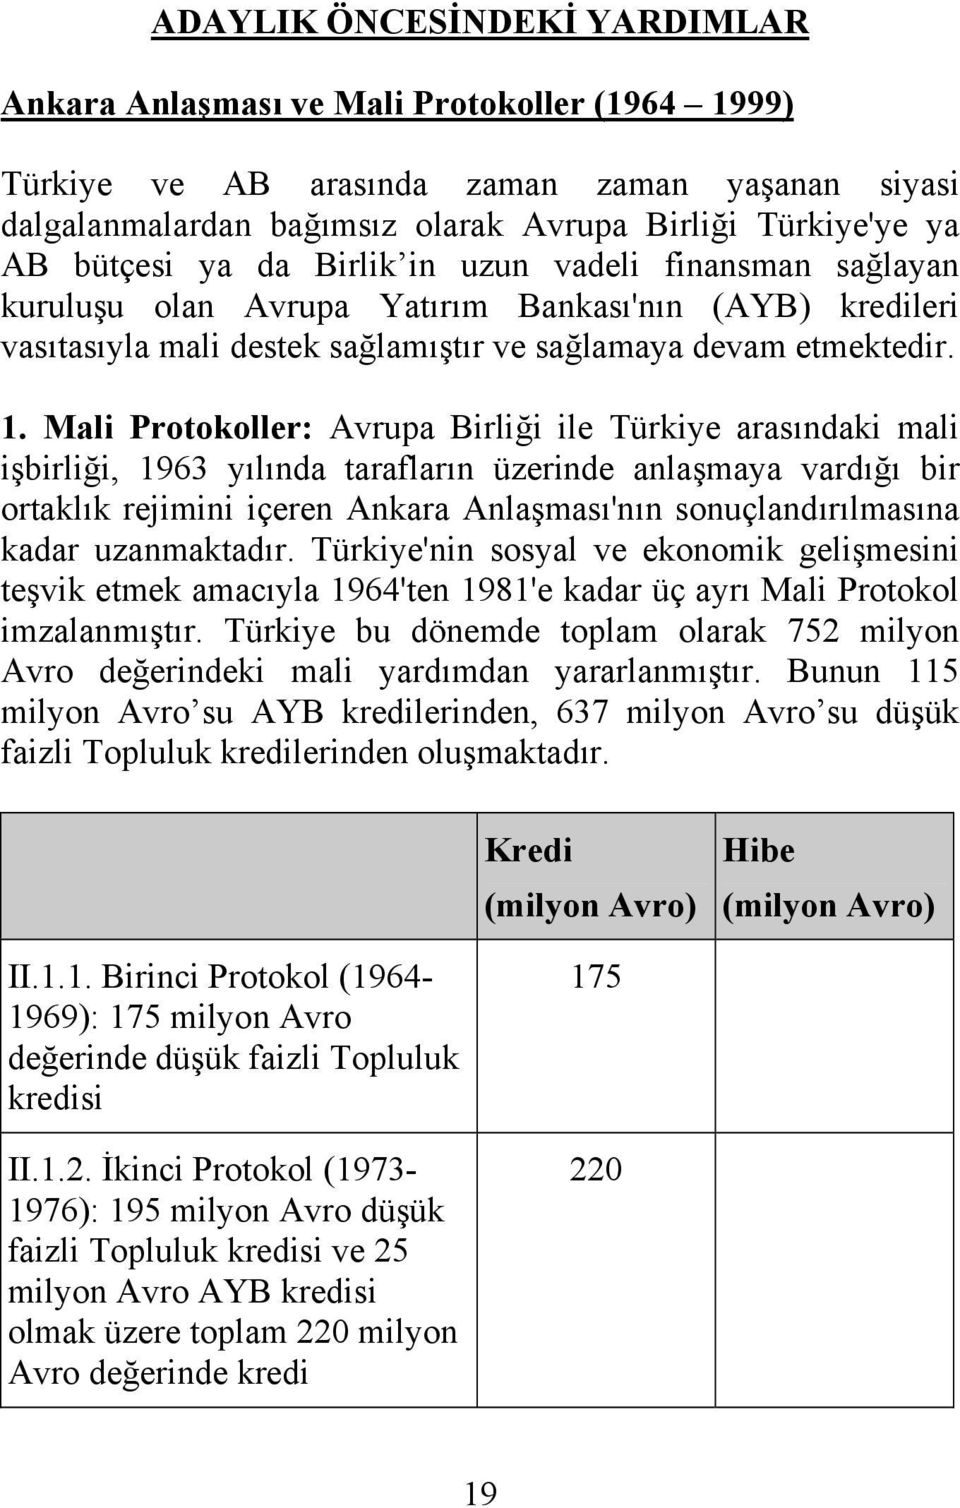 Mali Protokoller: Avrupa Birliği ile Türkiye arasındaki mali işbirliği, 1963 yılında tarafların üzerinde anlaşmaya vardığı bir ortaklık rejimini içeren Ankara Anlaşması'nın sonuçlandırılmasına kadar